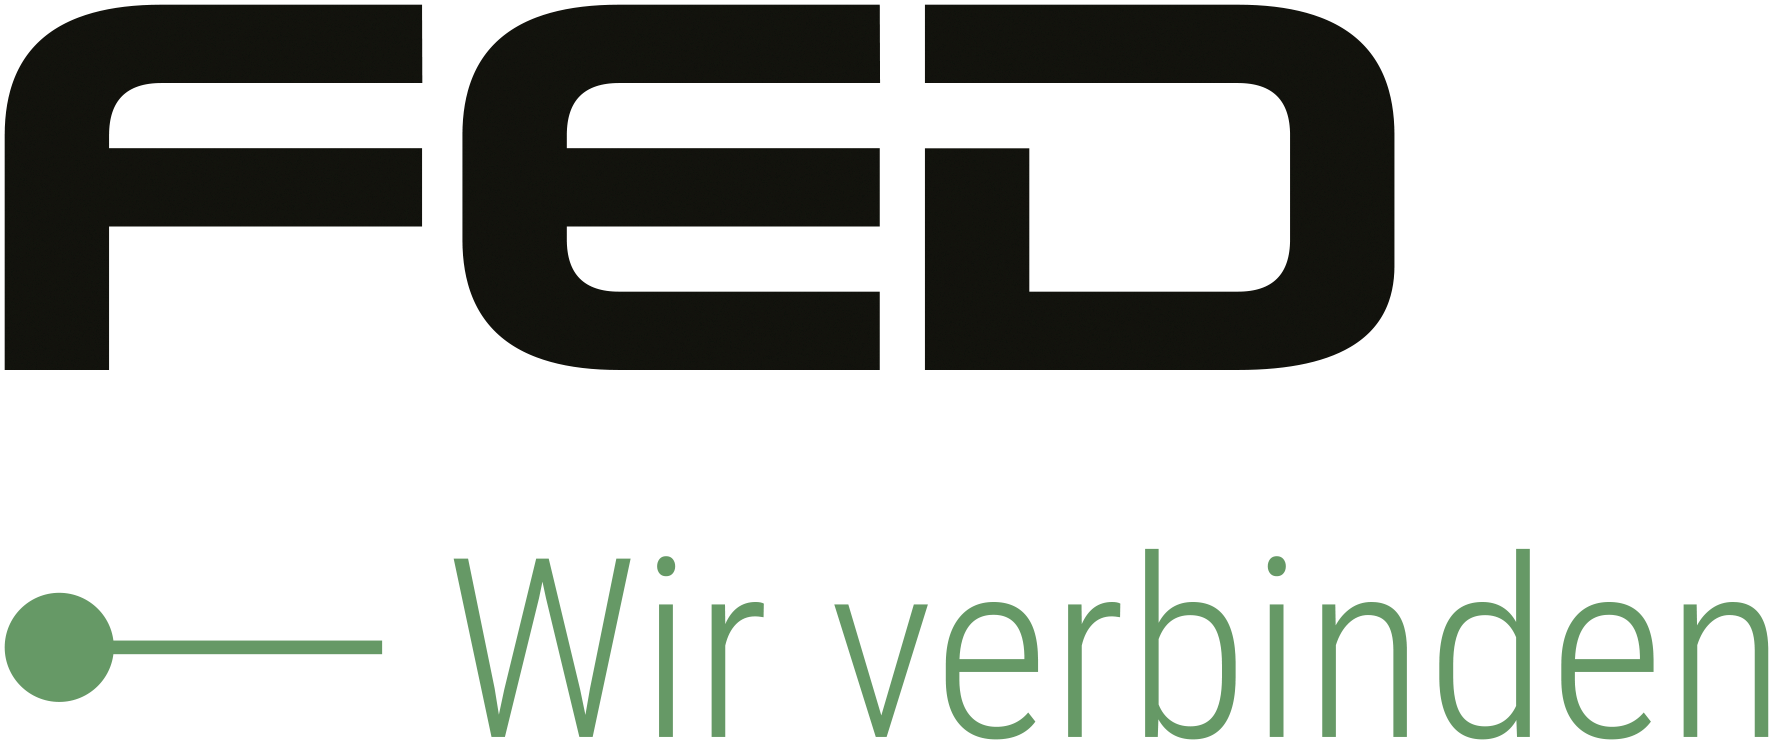 FED-Logo-mit-Claim-fuer-newsletter